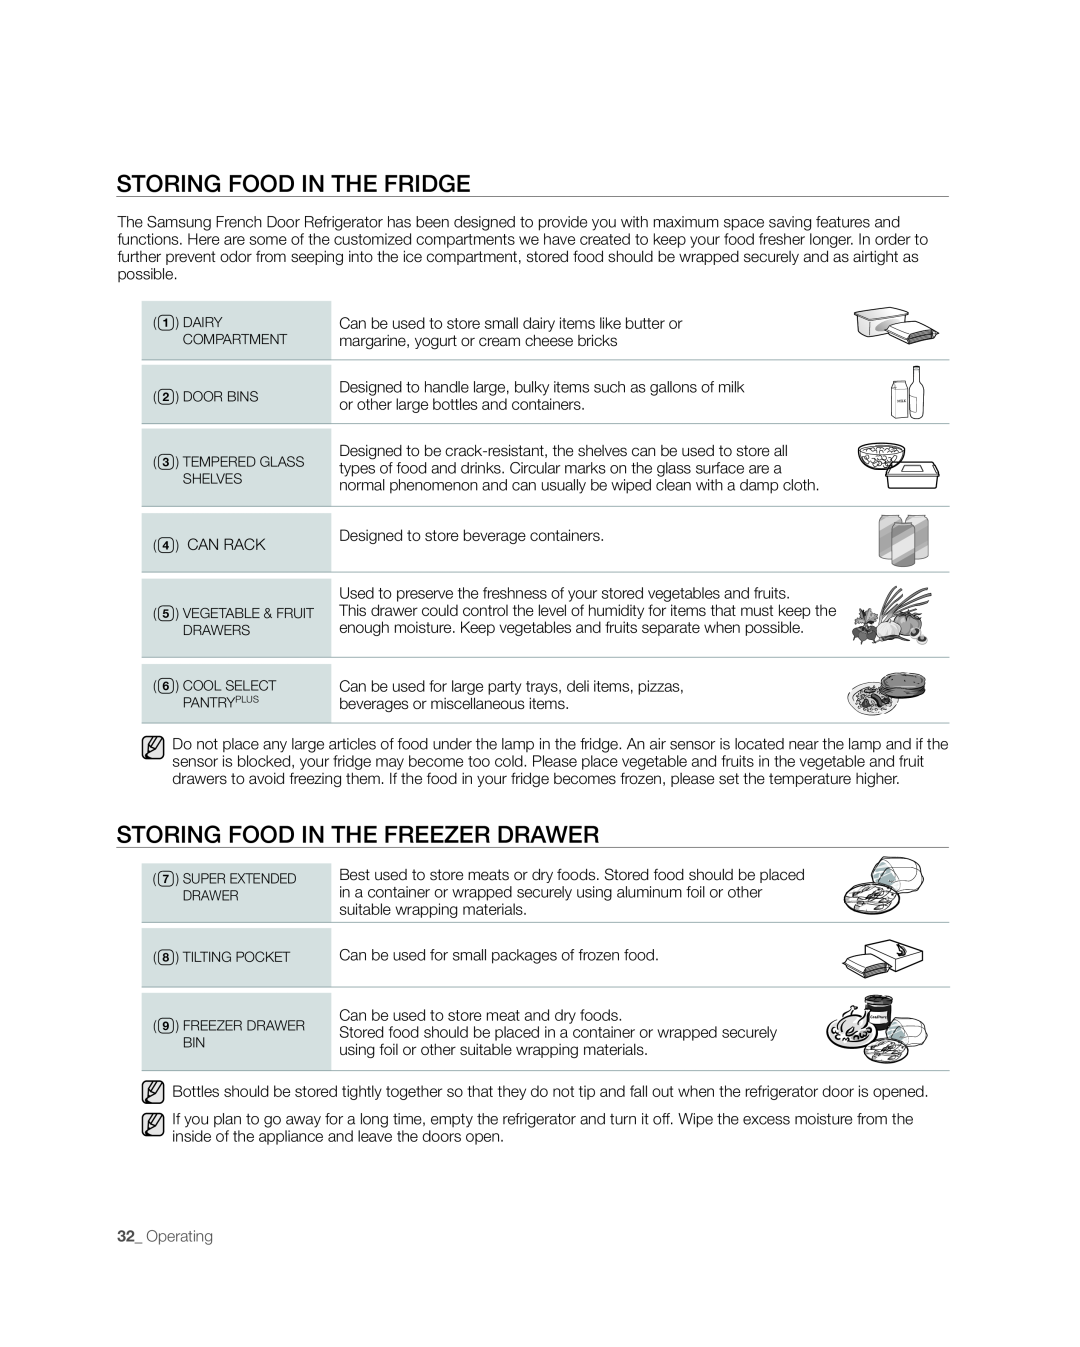 Samsung RFG237, RFG238AARS user manual Storing Food in the FRIDGE, Storing Food in the Freezer Drawer, Operating 